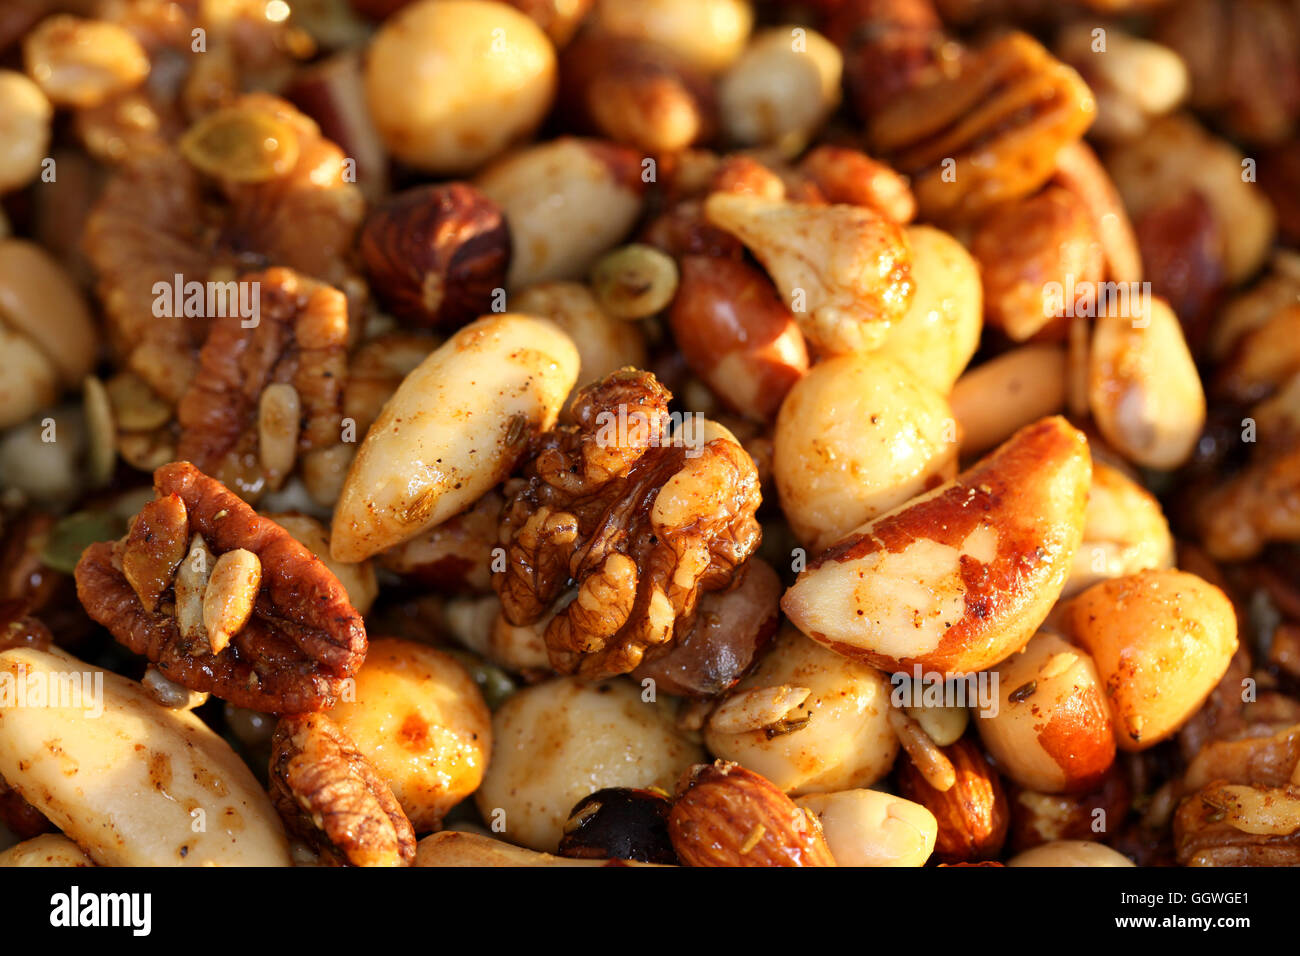 Nüssen, Honig und Gewürze hinzugefügt miteinander vermischt, dieses knackige, köstlichste nussige fest zu machen Stockfoto